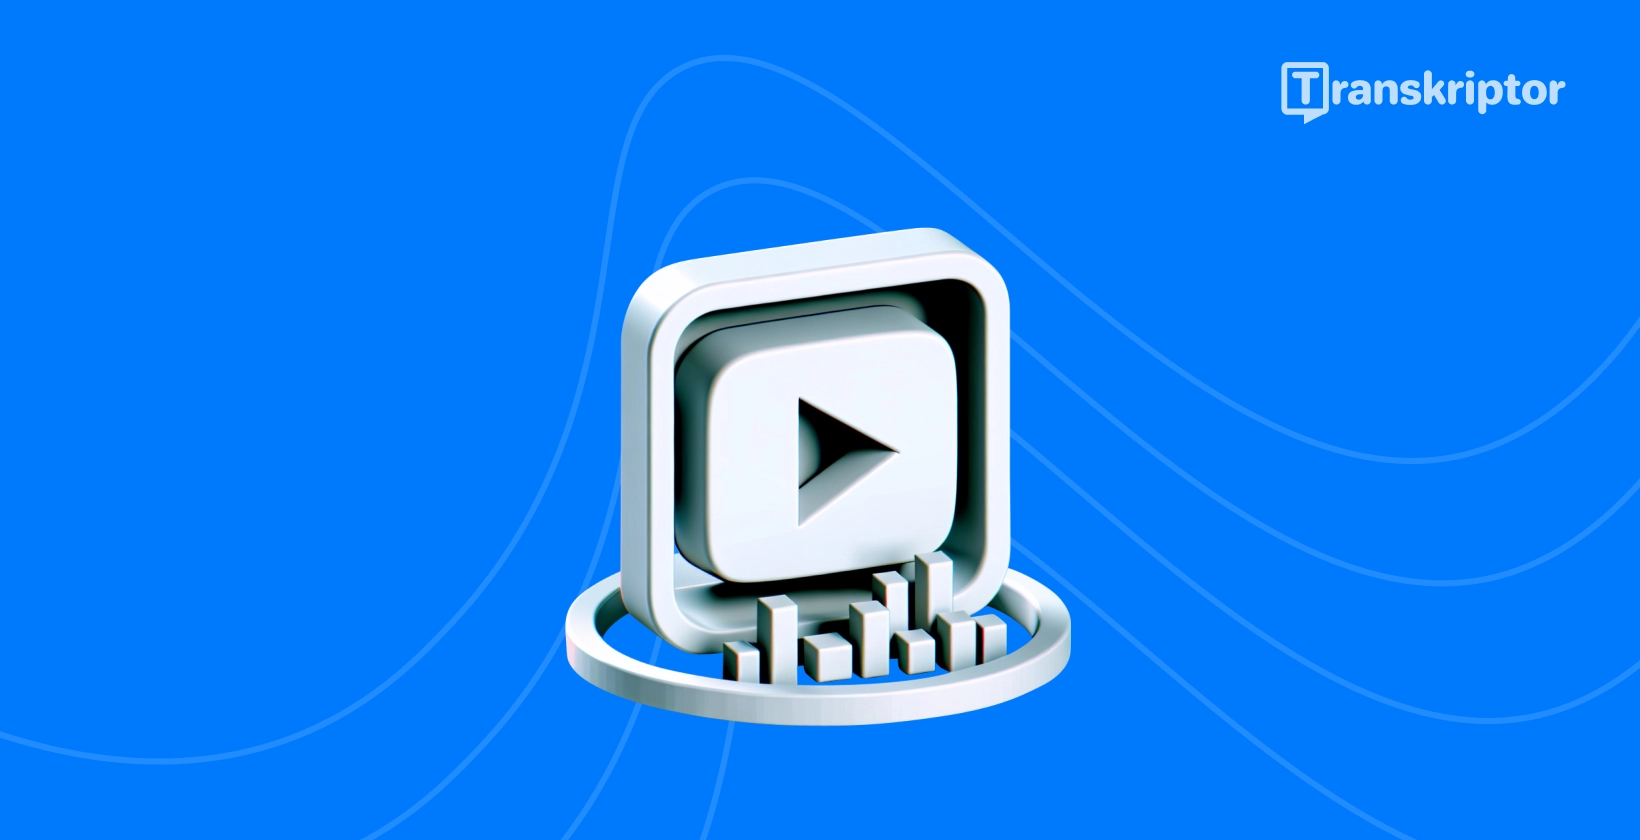 Przycisk odtwarzania i wizualne metody transkrypcji ilustrujące metody skutecznej transkrypcji filmów YouTube.